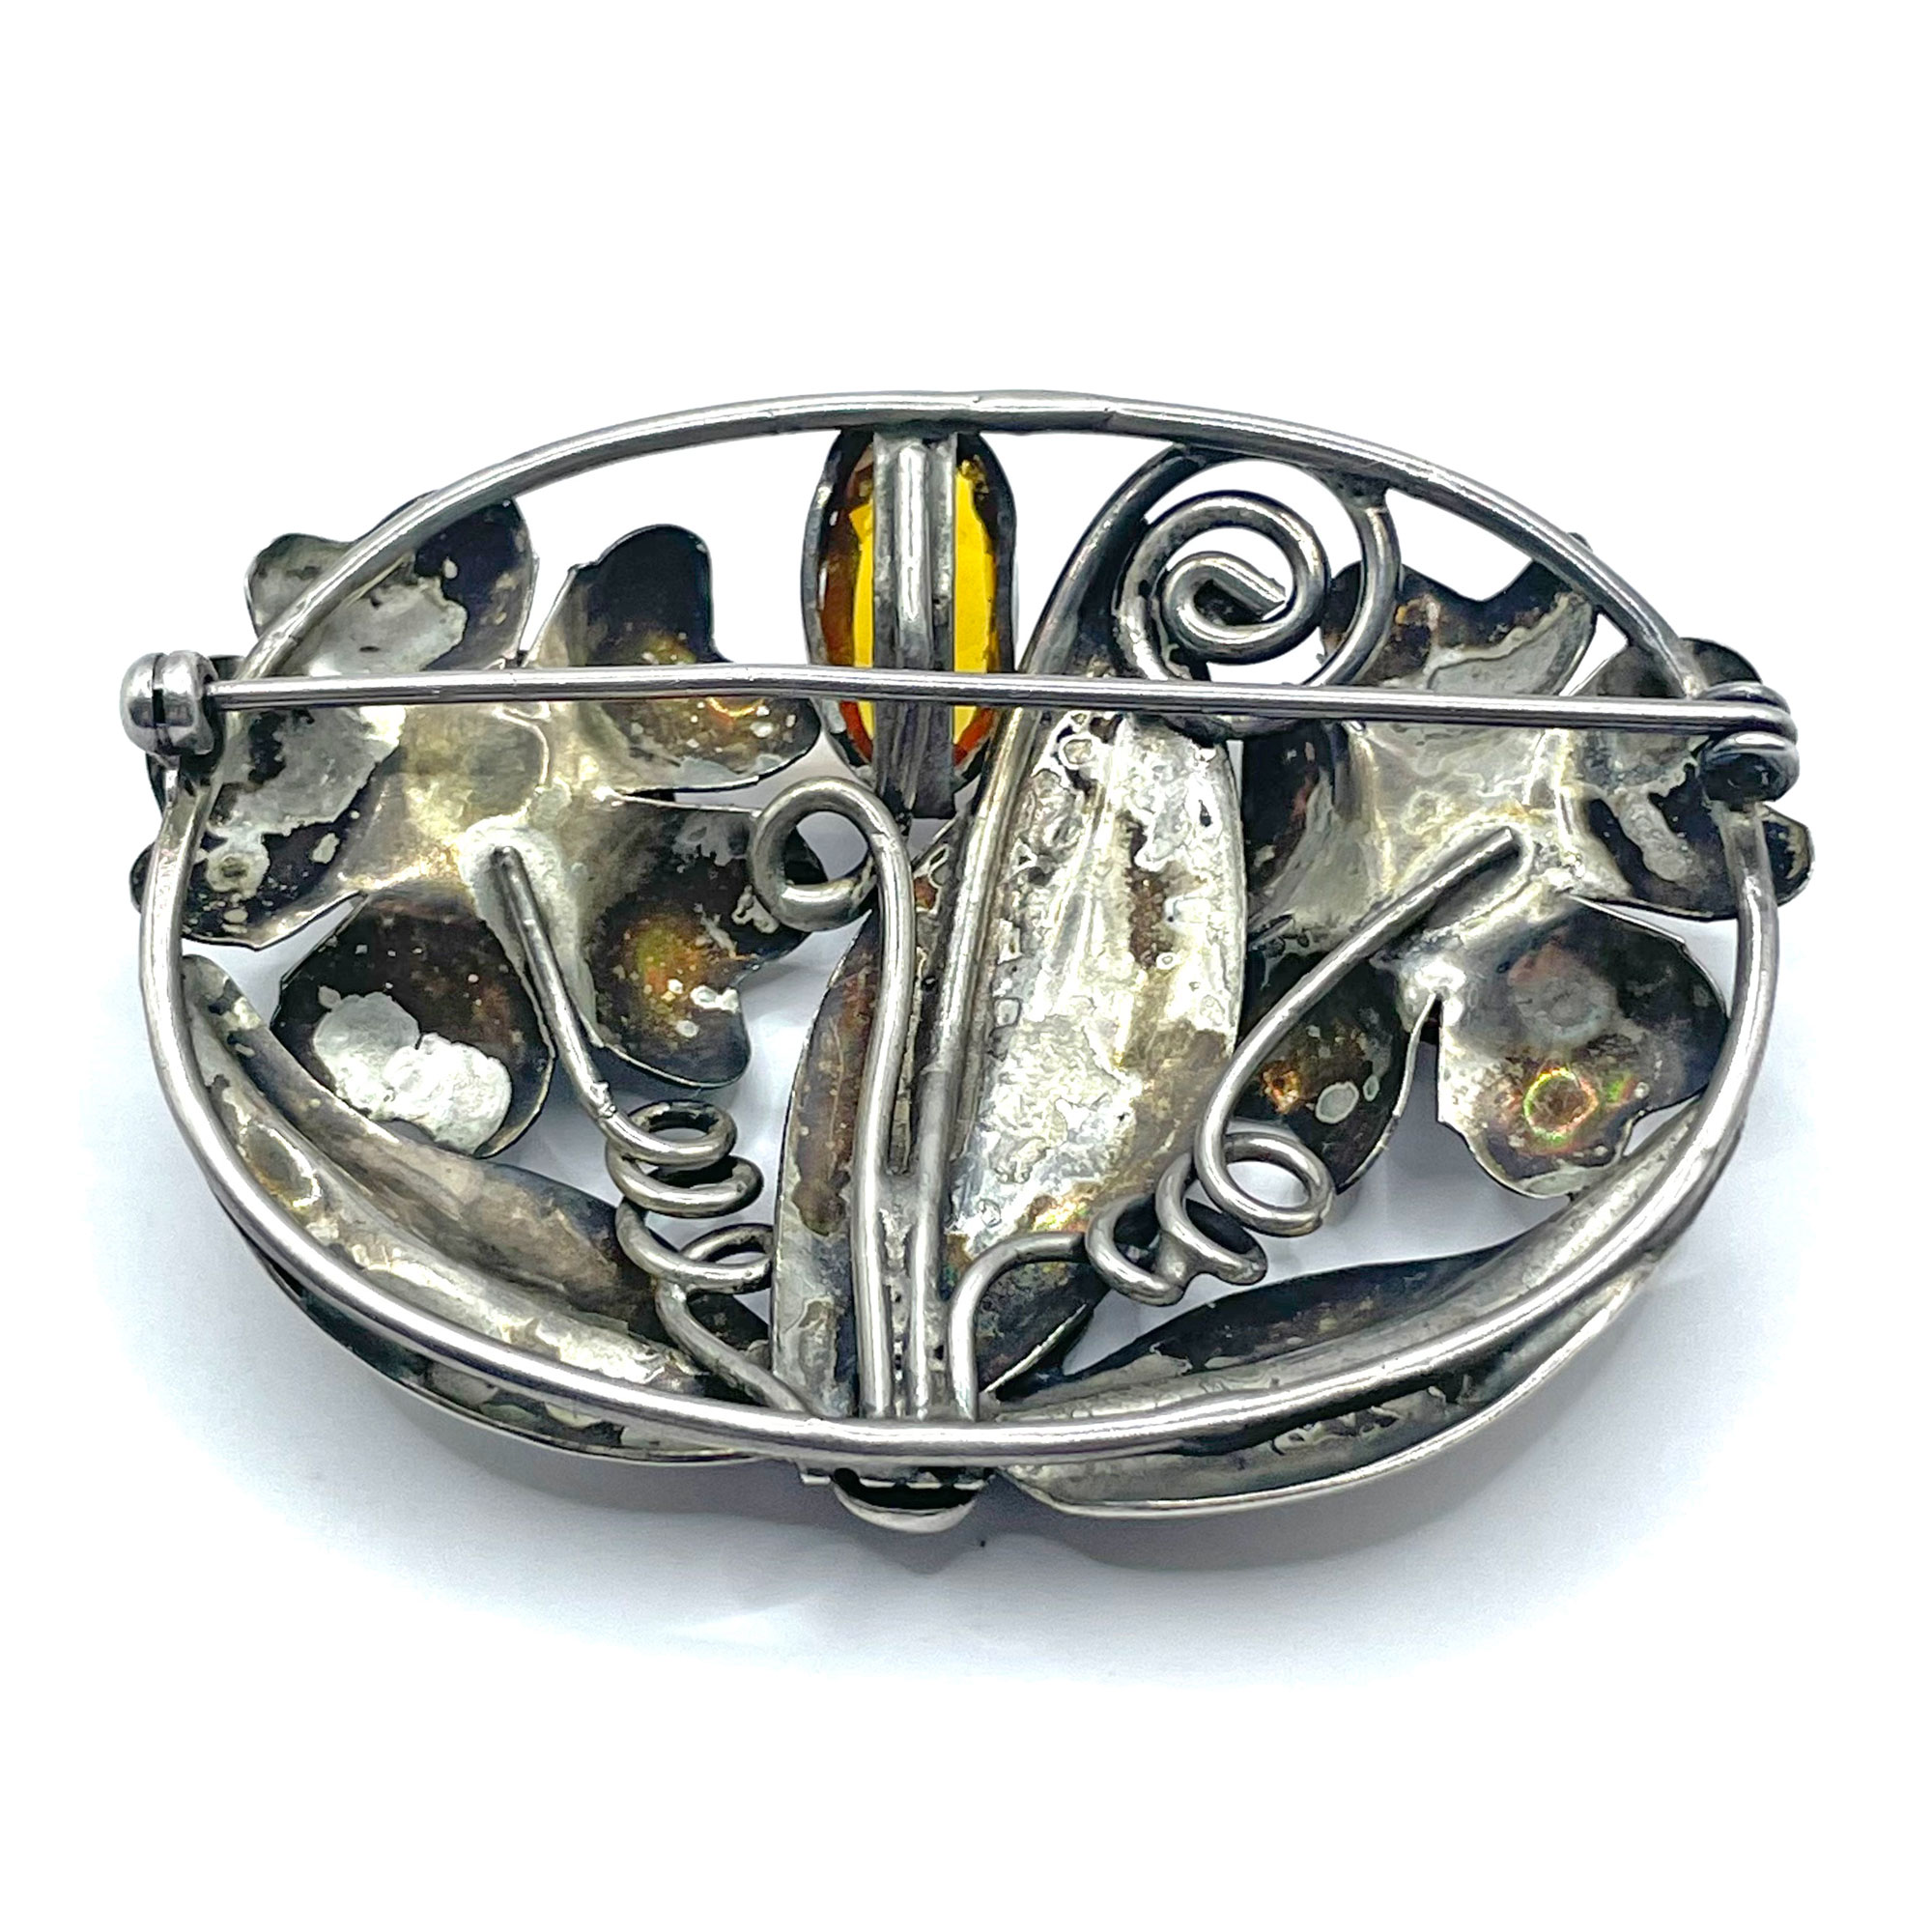 Sterling silver rhinestone brooch